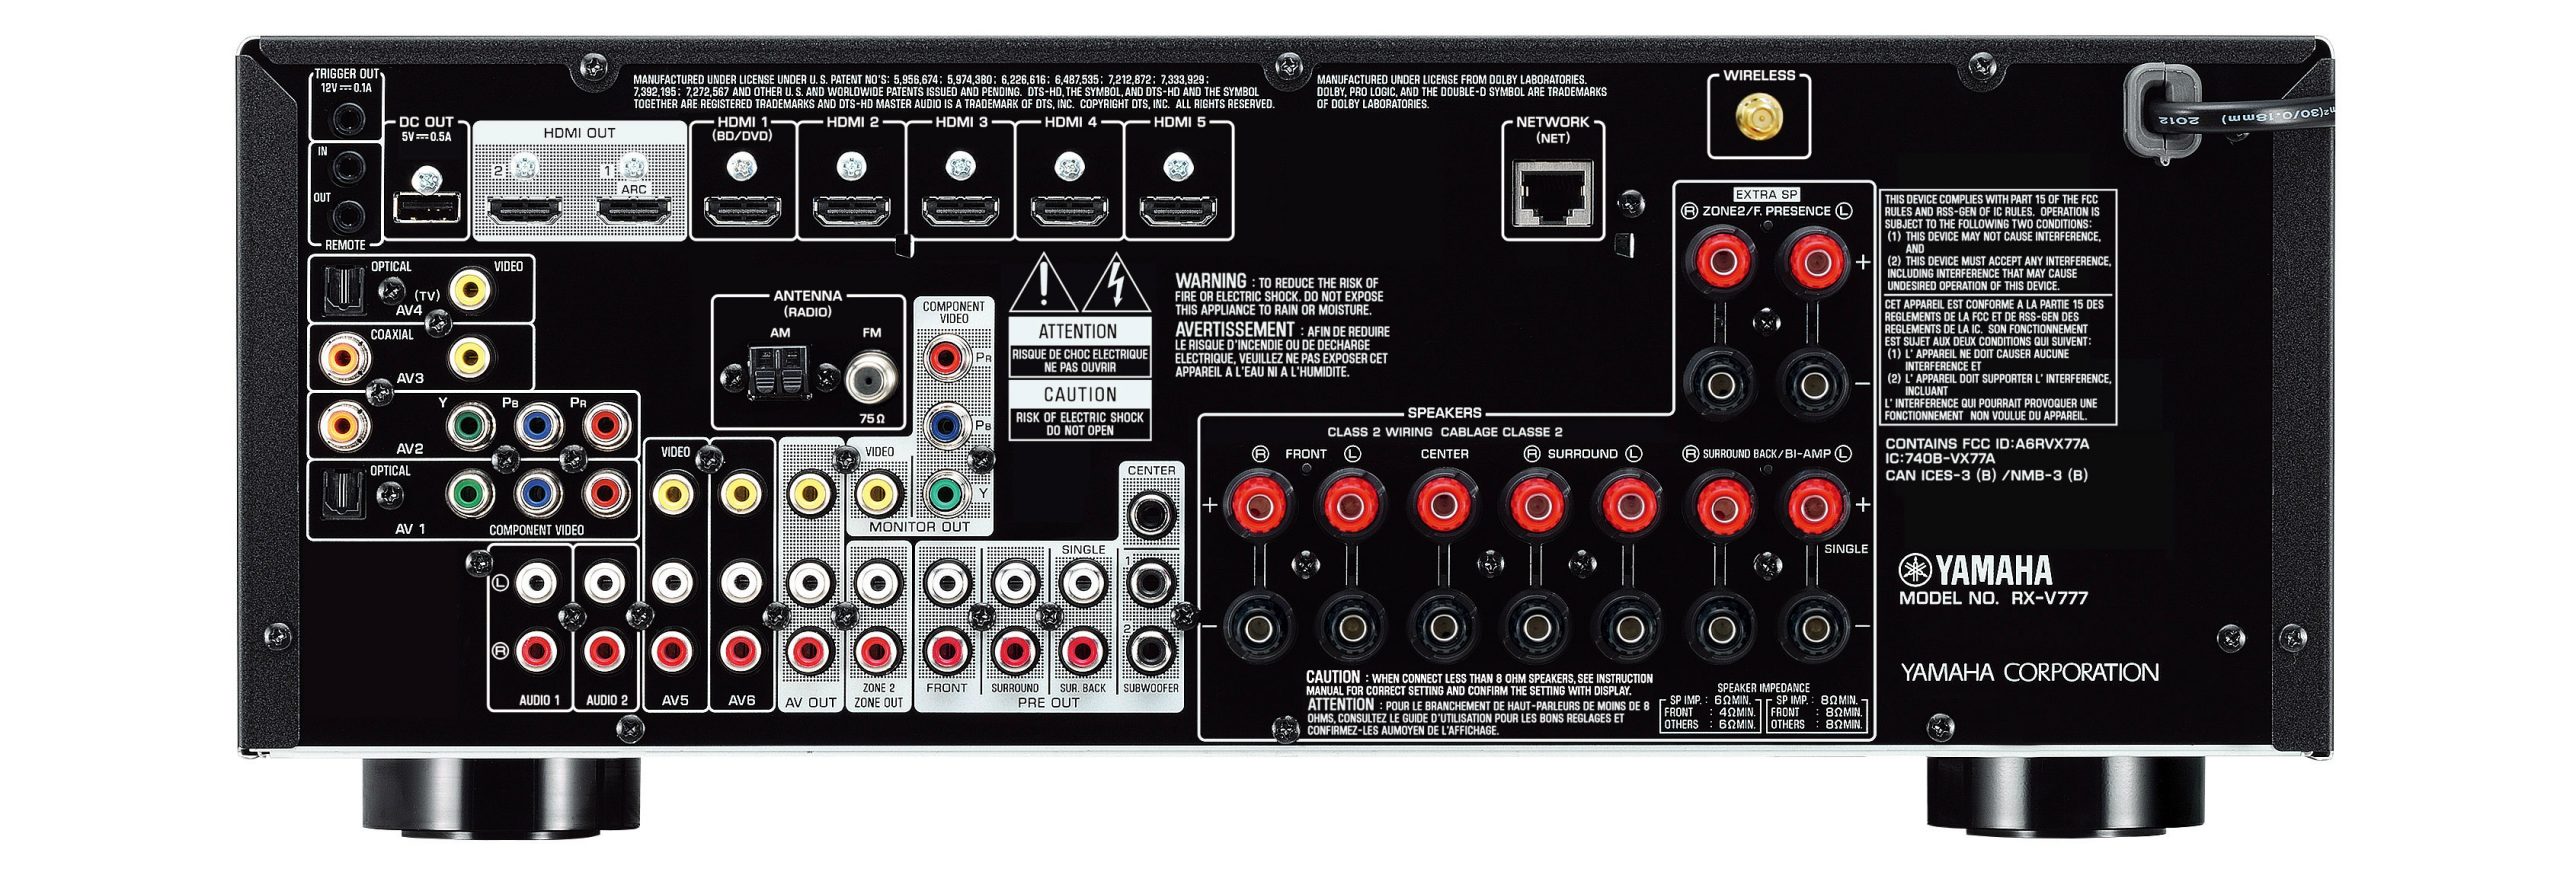 Yamaha RX-V777BT Review | SoundVisionReview